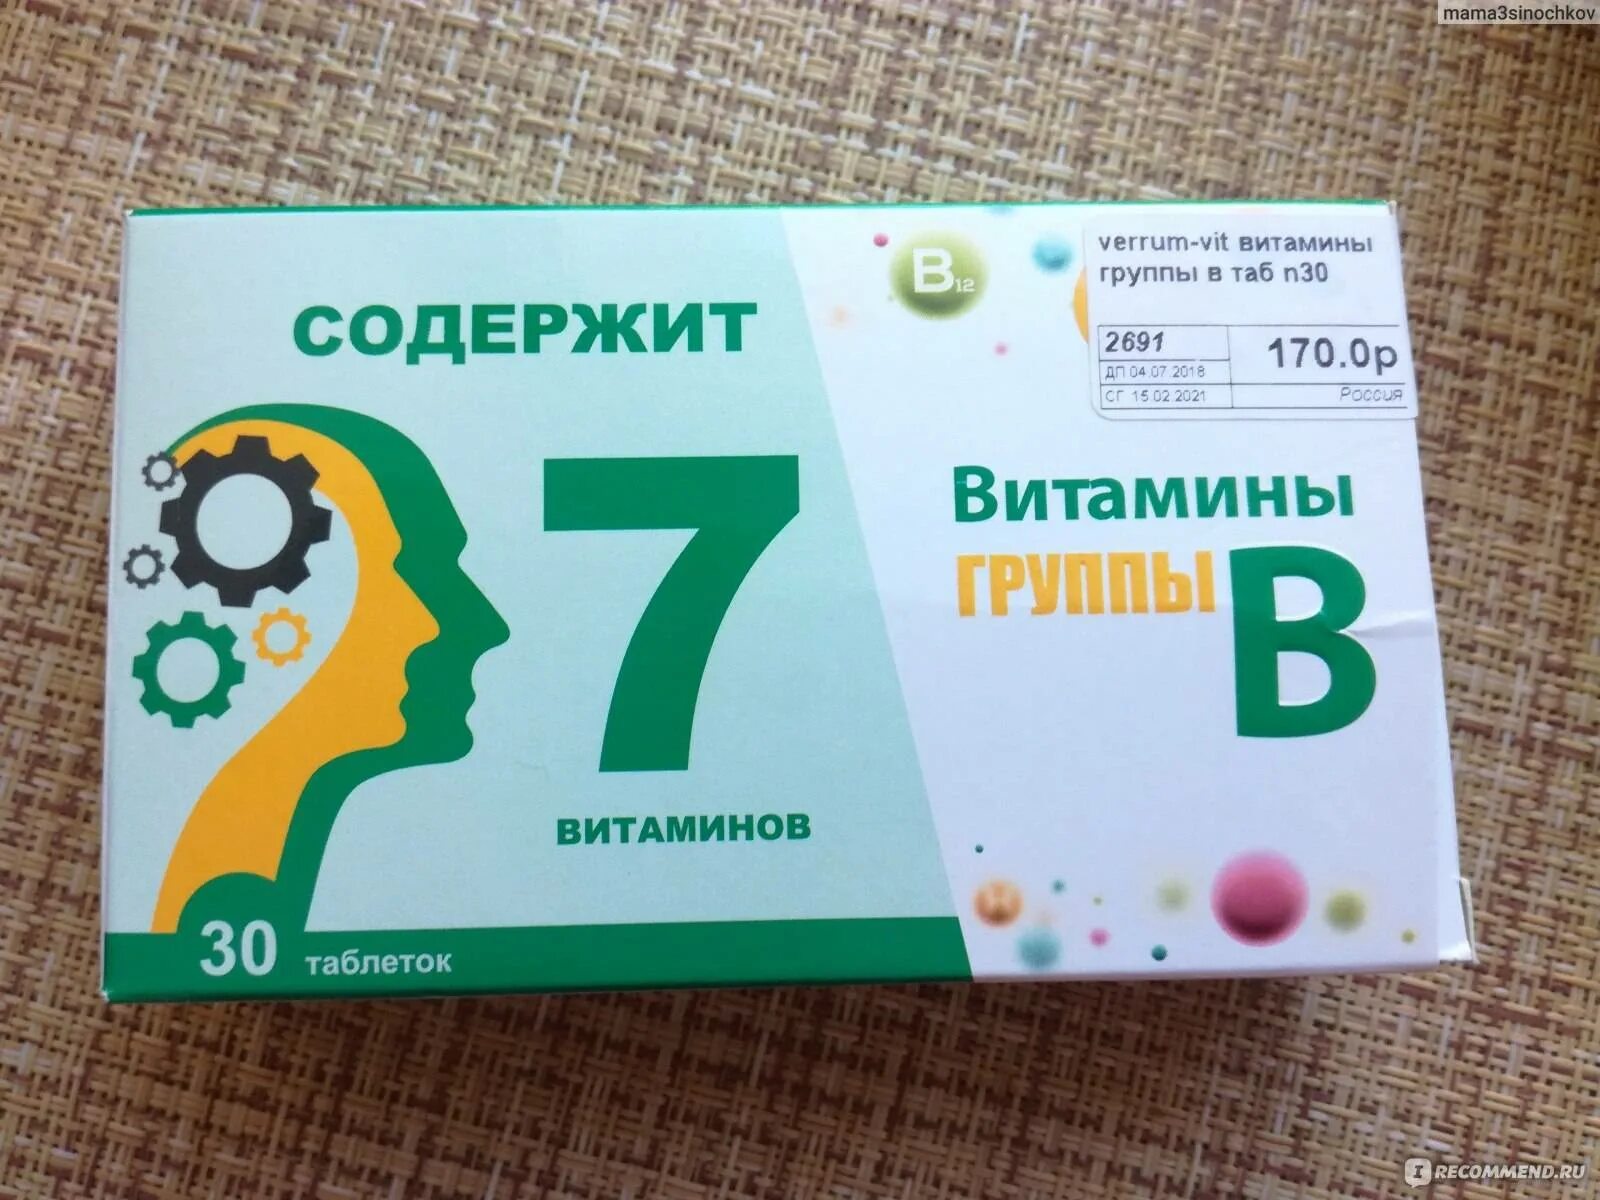 Легко купить минск. Витаминный комплекс в12 в6. Комплекс витаминов в2 в6 в12. Витаминный комплекс в6 в9 в12. Витамины б1 б6 б12 в таблетках.